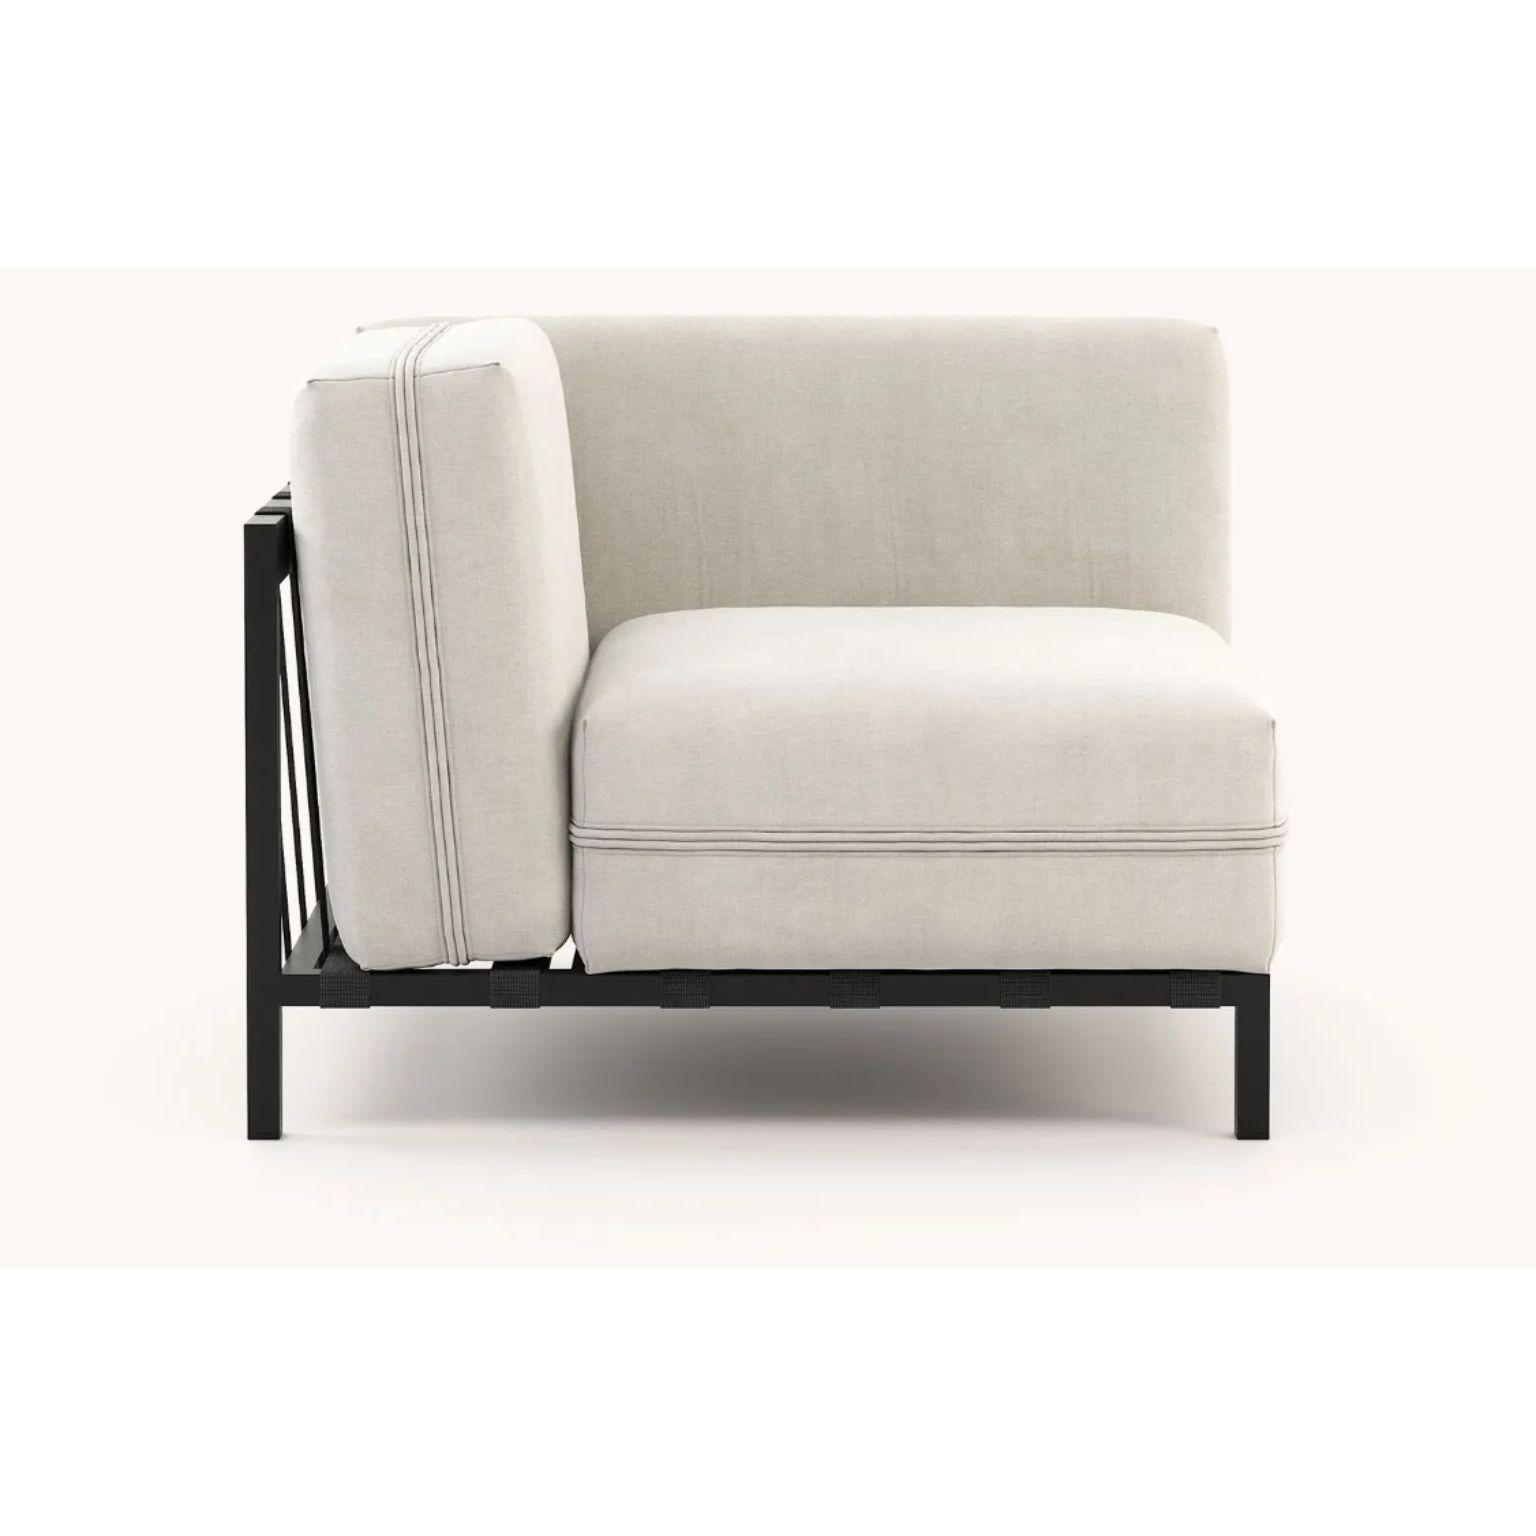 Portuguese Bondi Corner Chair by Domkapa For Sale